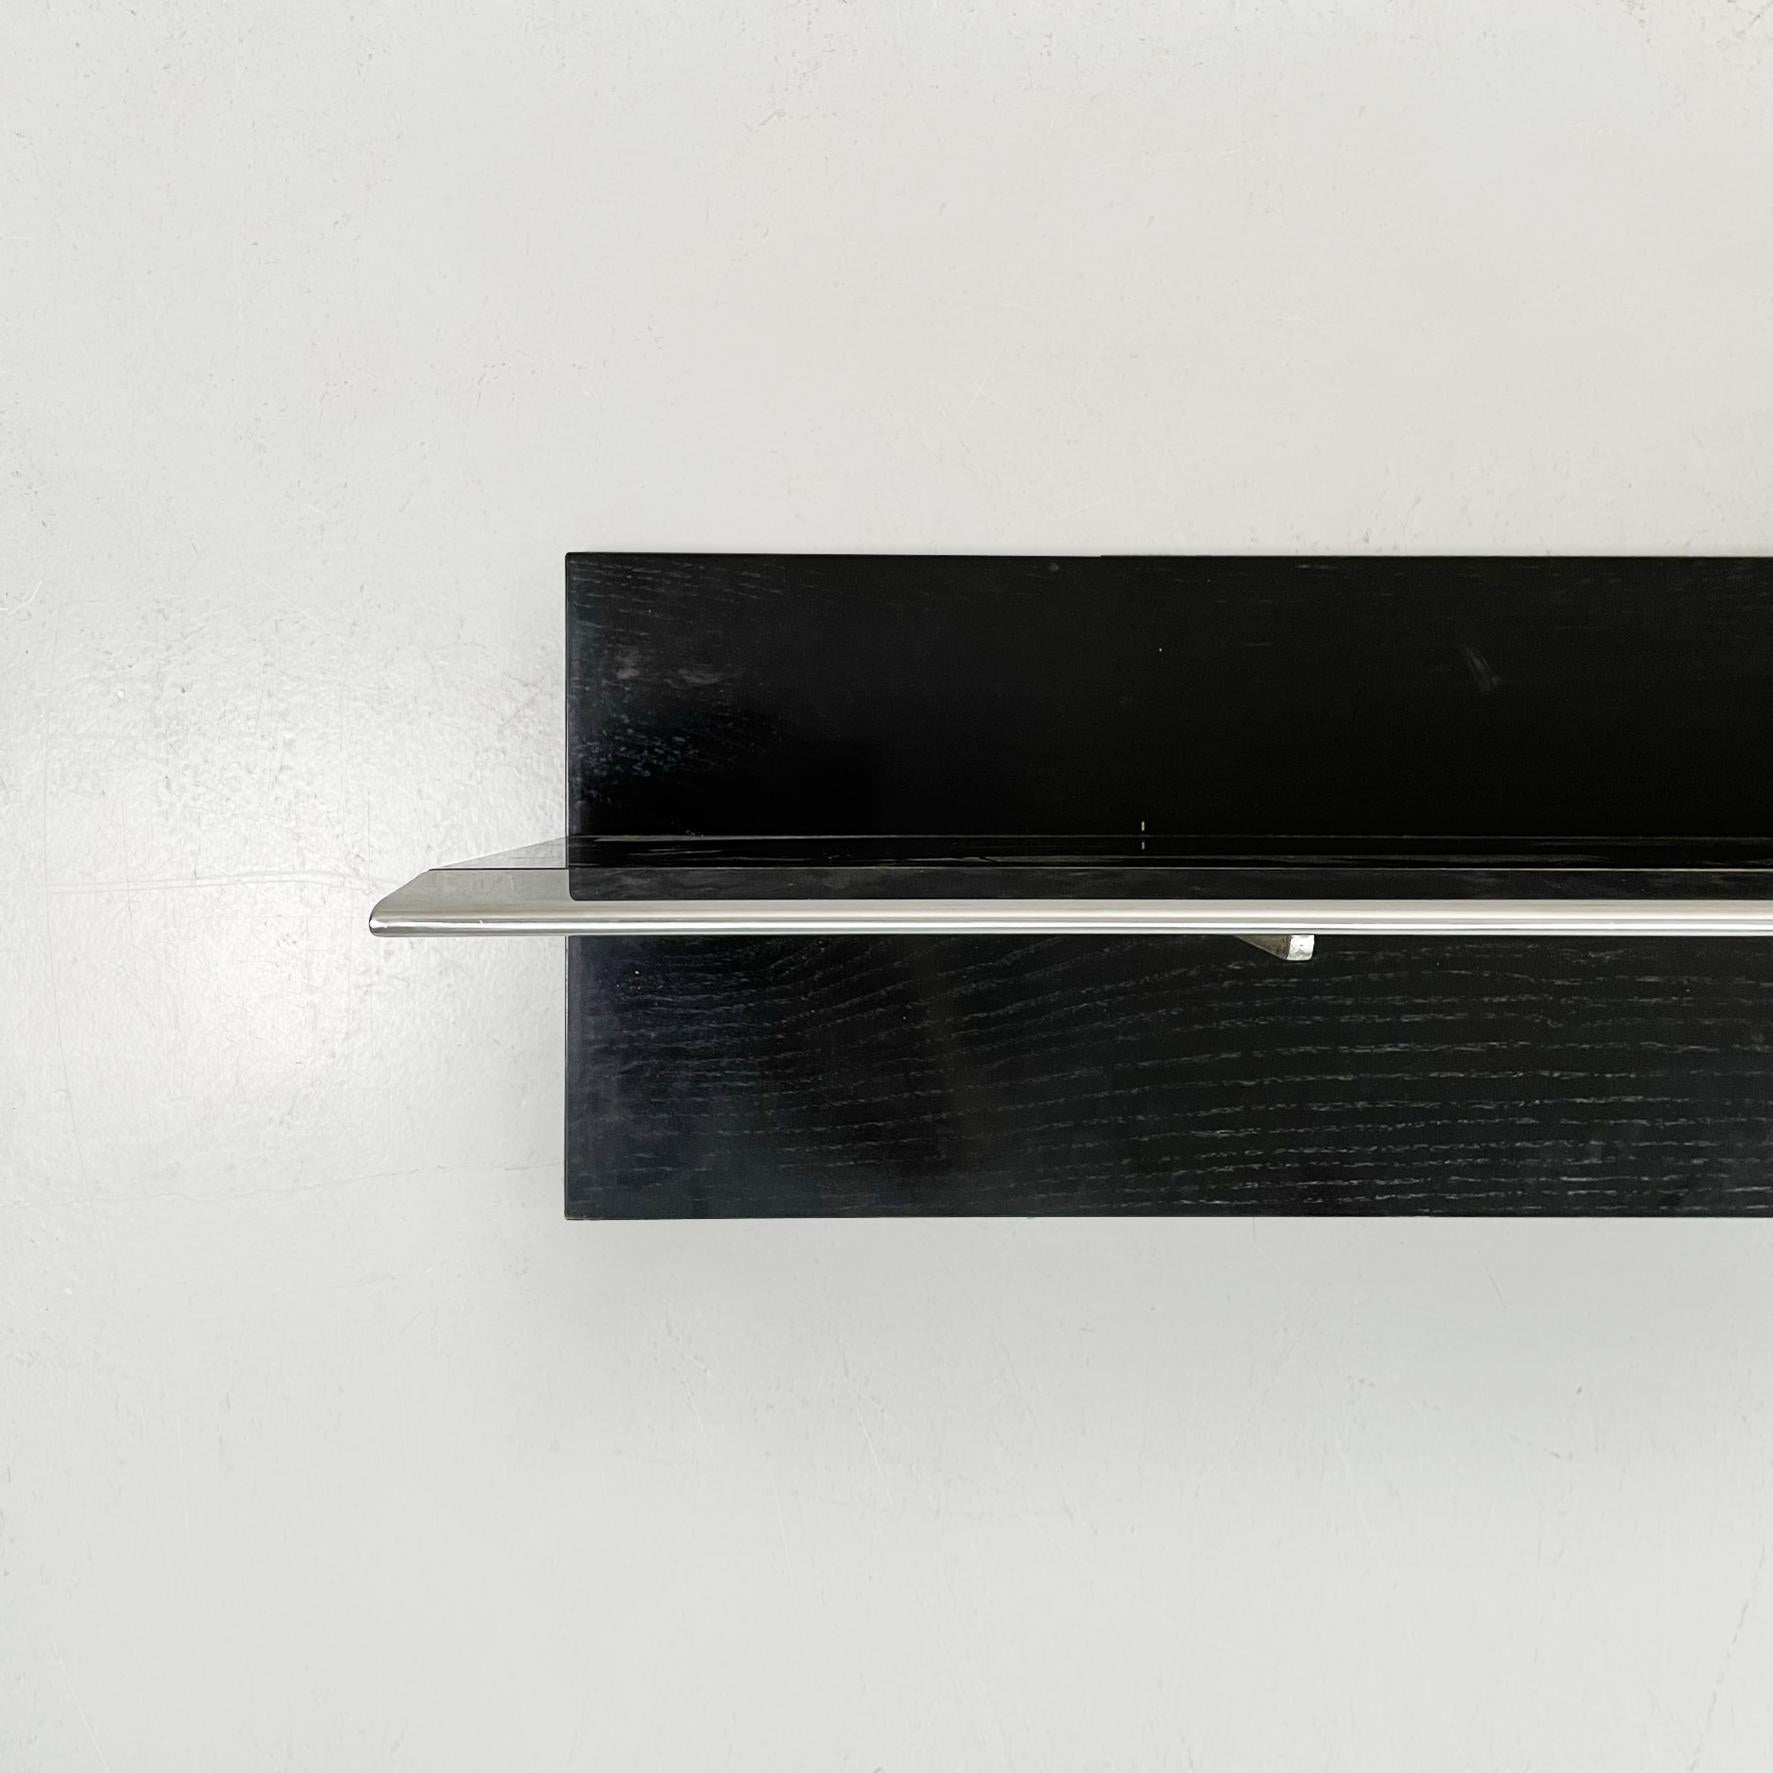 Etagère moderne italienne en bois noir et acier, années 1980
Etagère avec plateau rectangulaire en bois peint en noir et finitions en acier. L'étagère comporte un axe vertical sur lequel sont placés les 2 supports en acier.

1980s.

Bon état, les